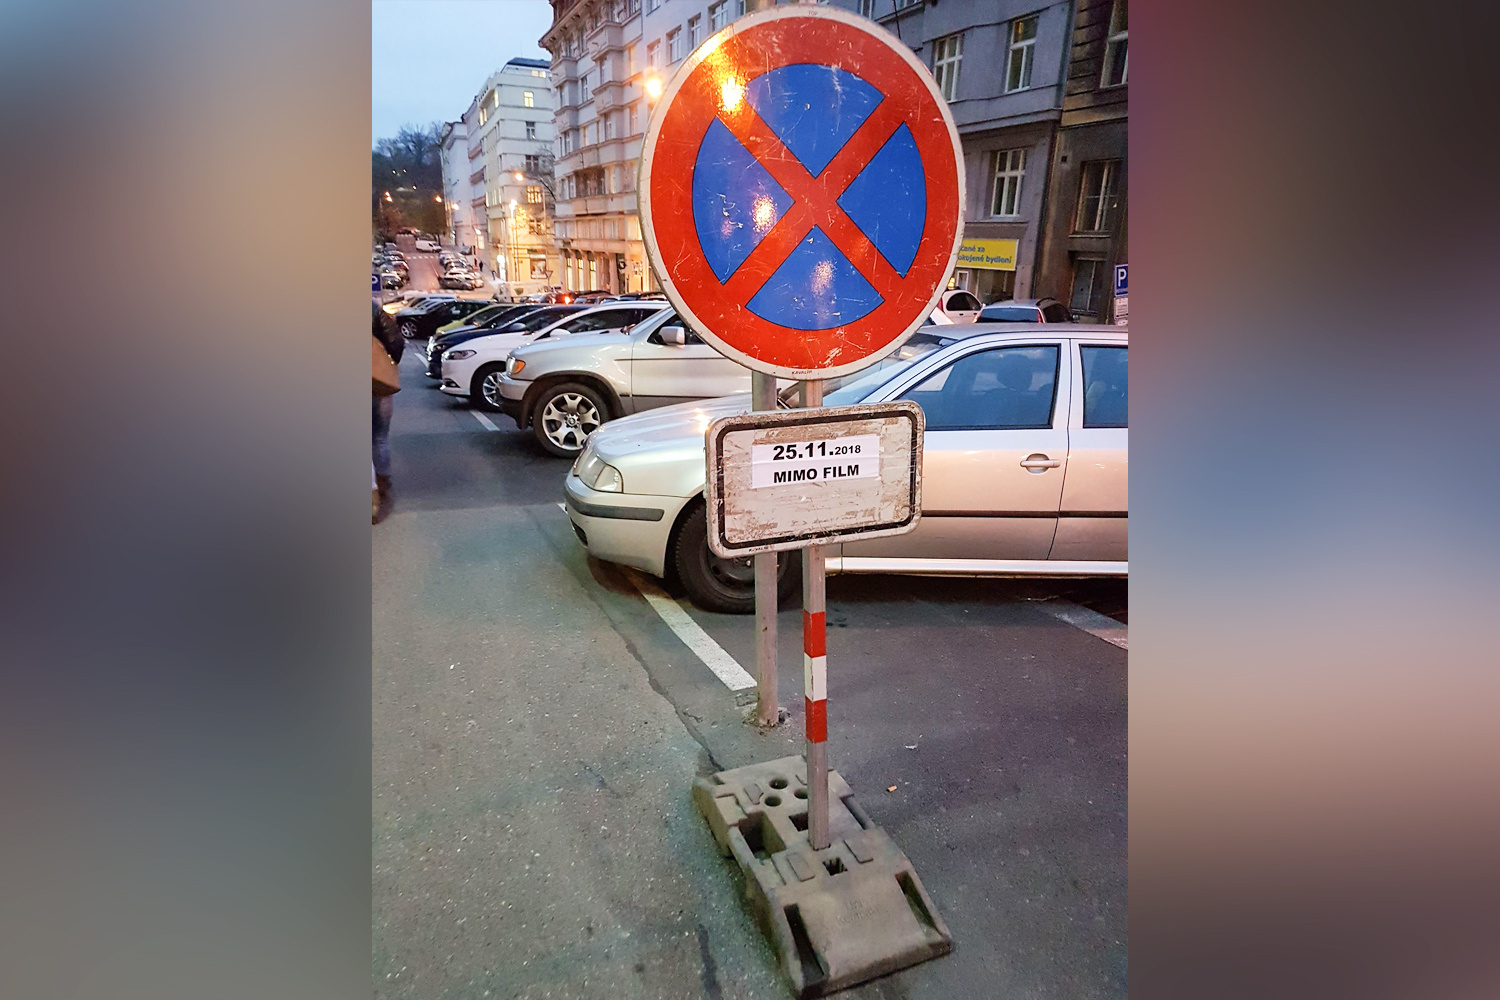 На улицах Праги можно увидеть такие знаки. Они означают, что движение по улице будет перекрыто из-за съёмок фильма